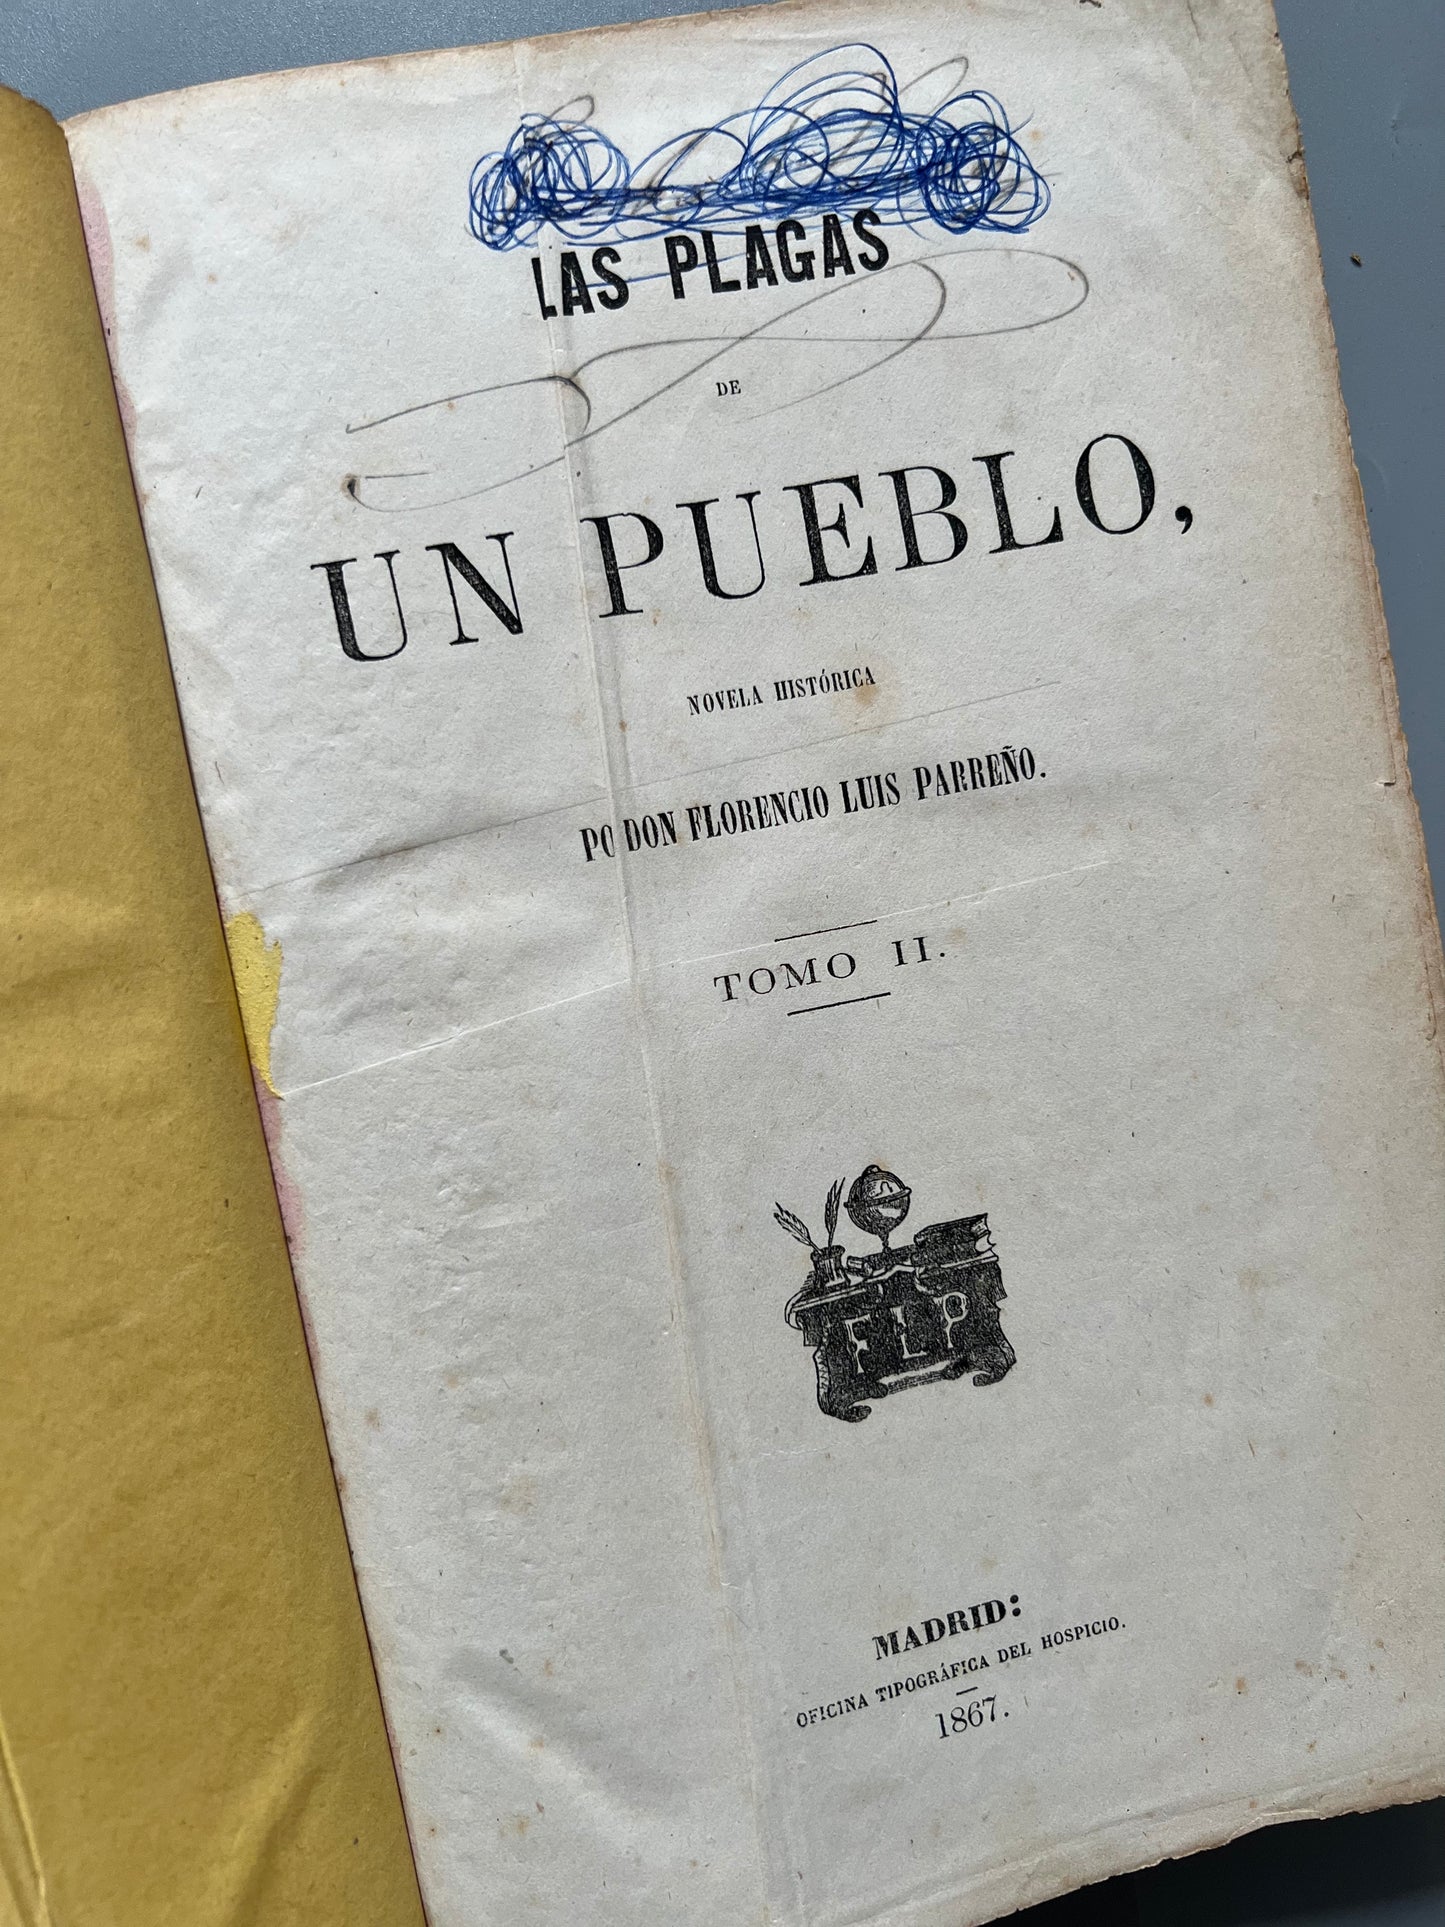 Las plagas de un pueblo, Florencio Luis Parreño - Oficina tipográfica del hospicio, 1870